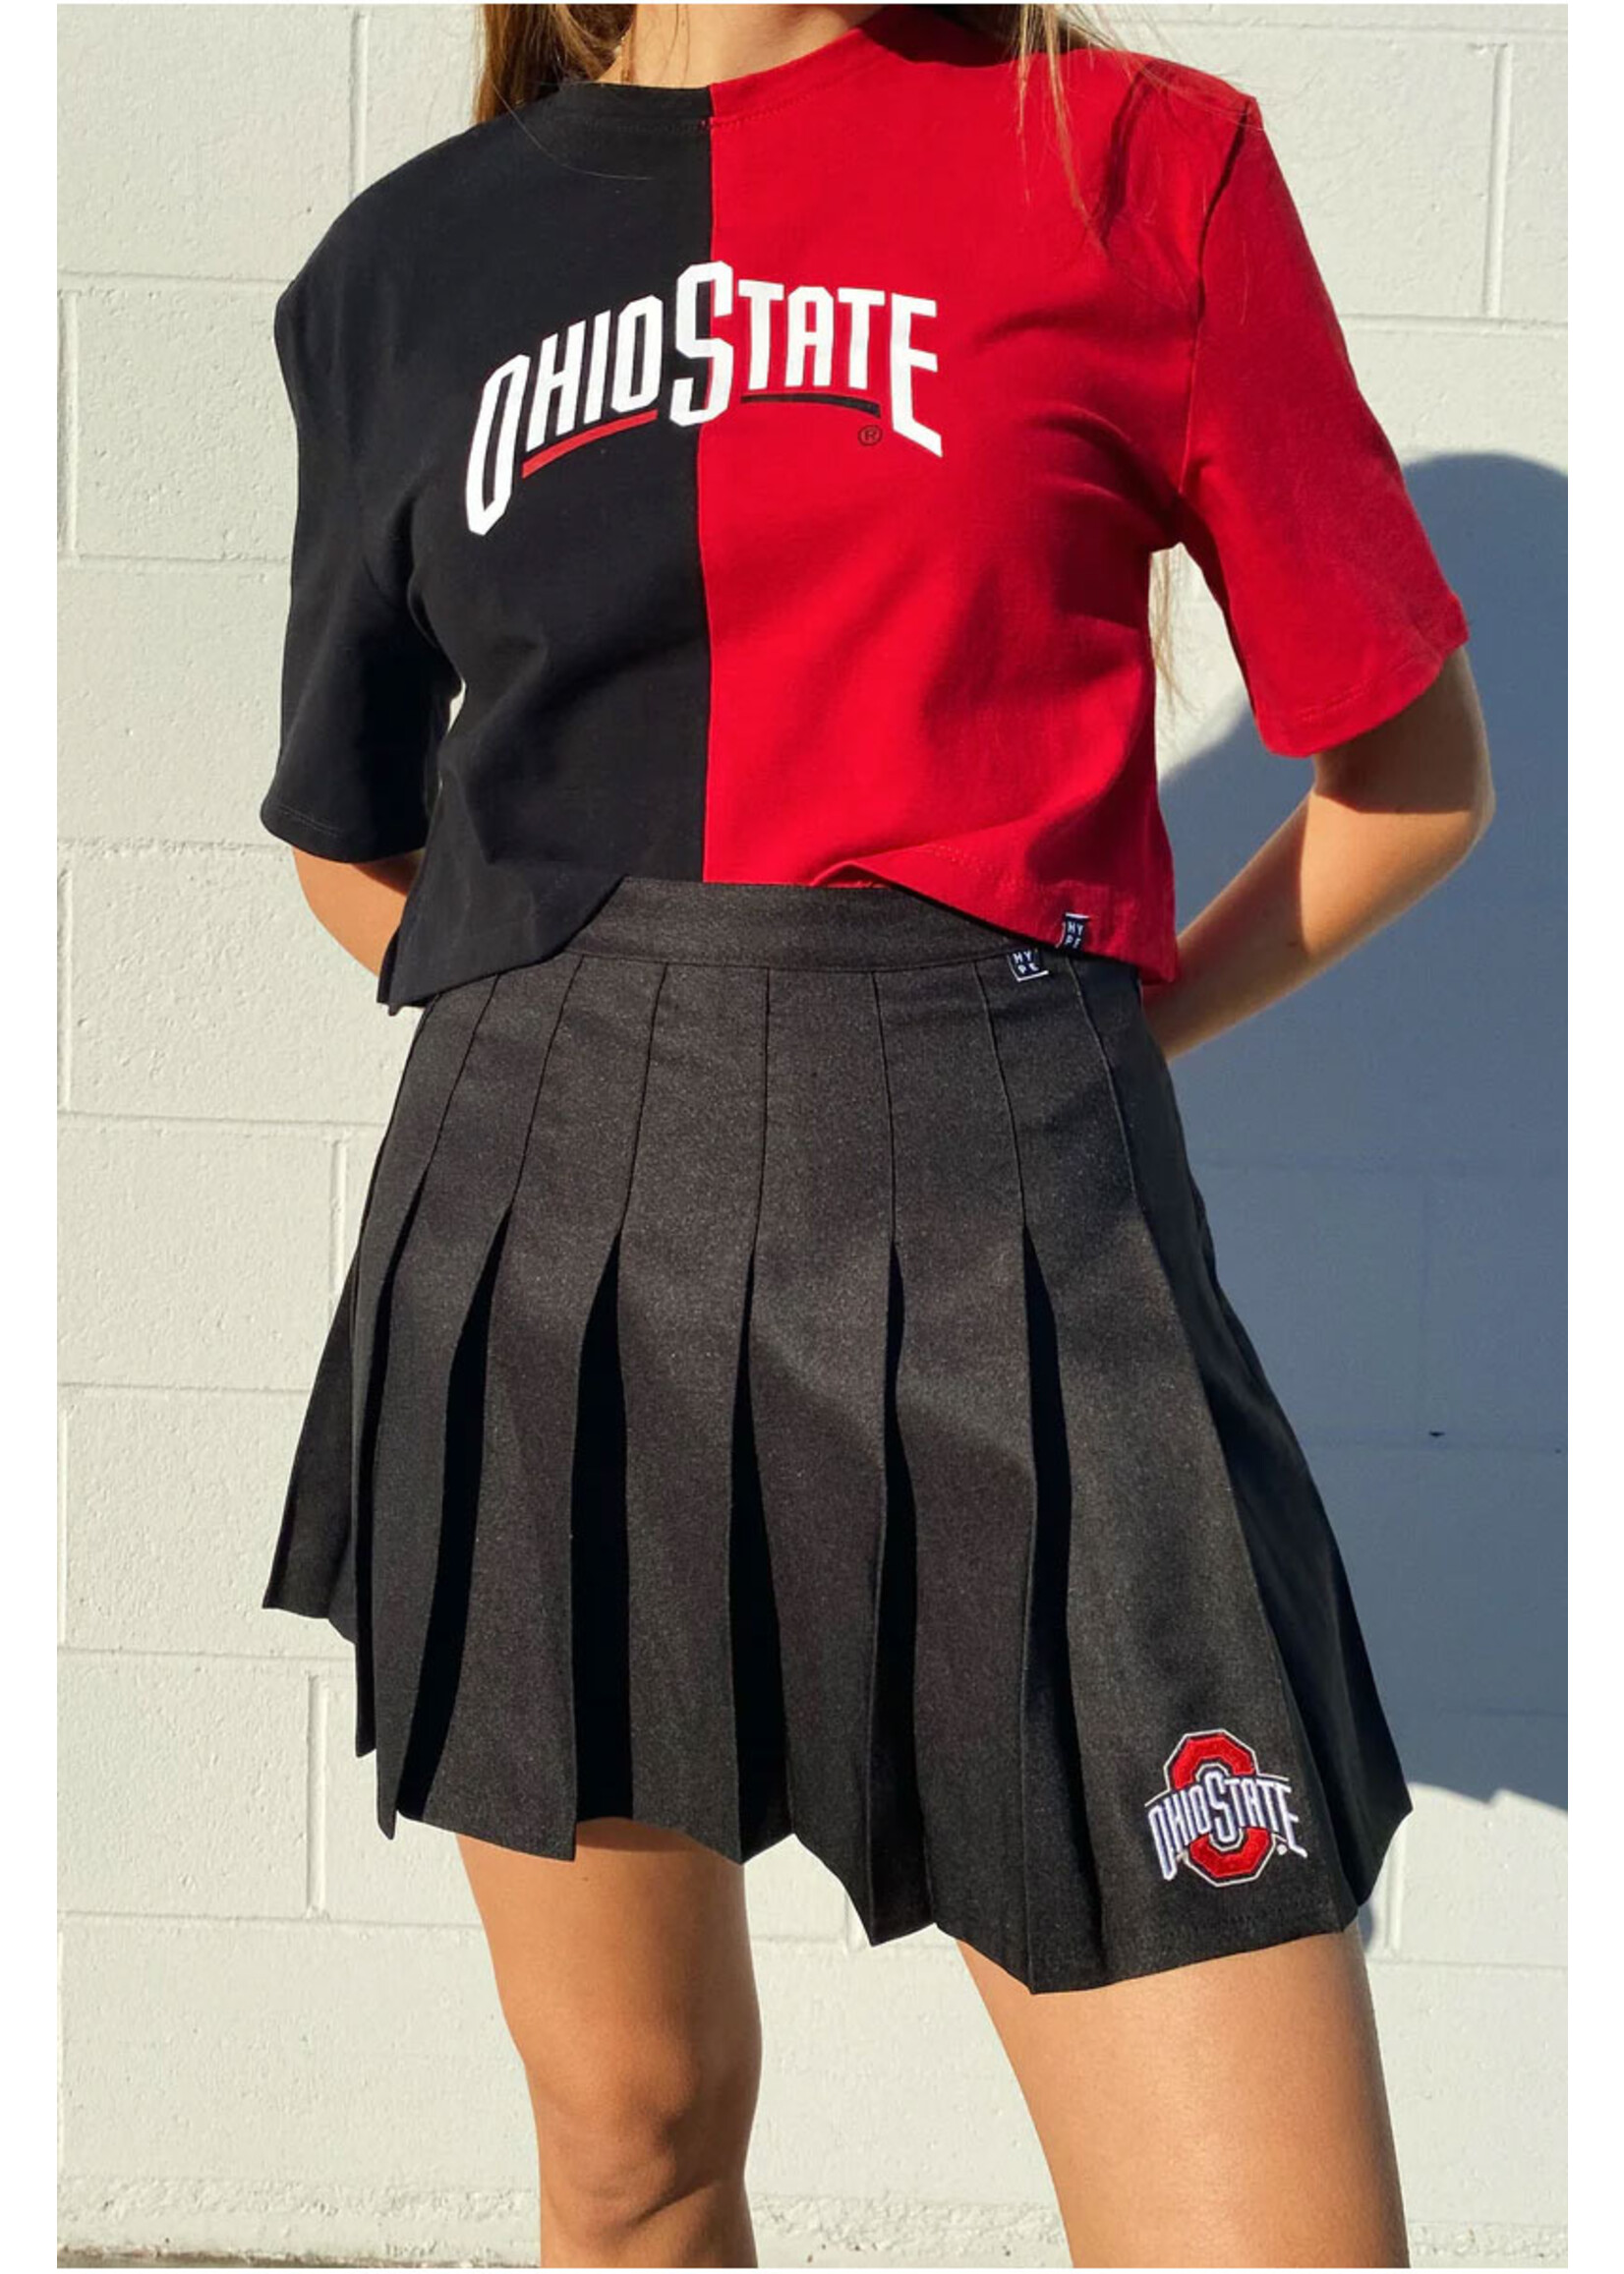 Ohio State Buckeyes Women's Tennis Skirt